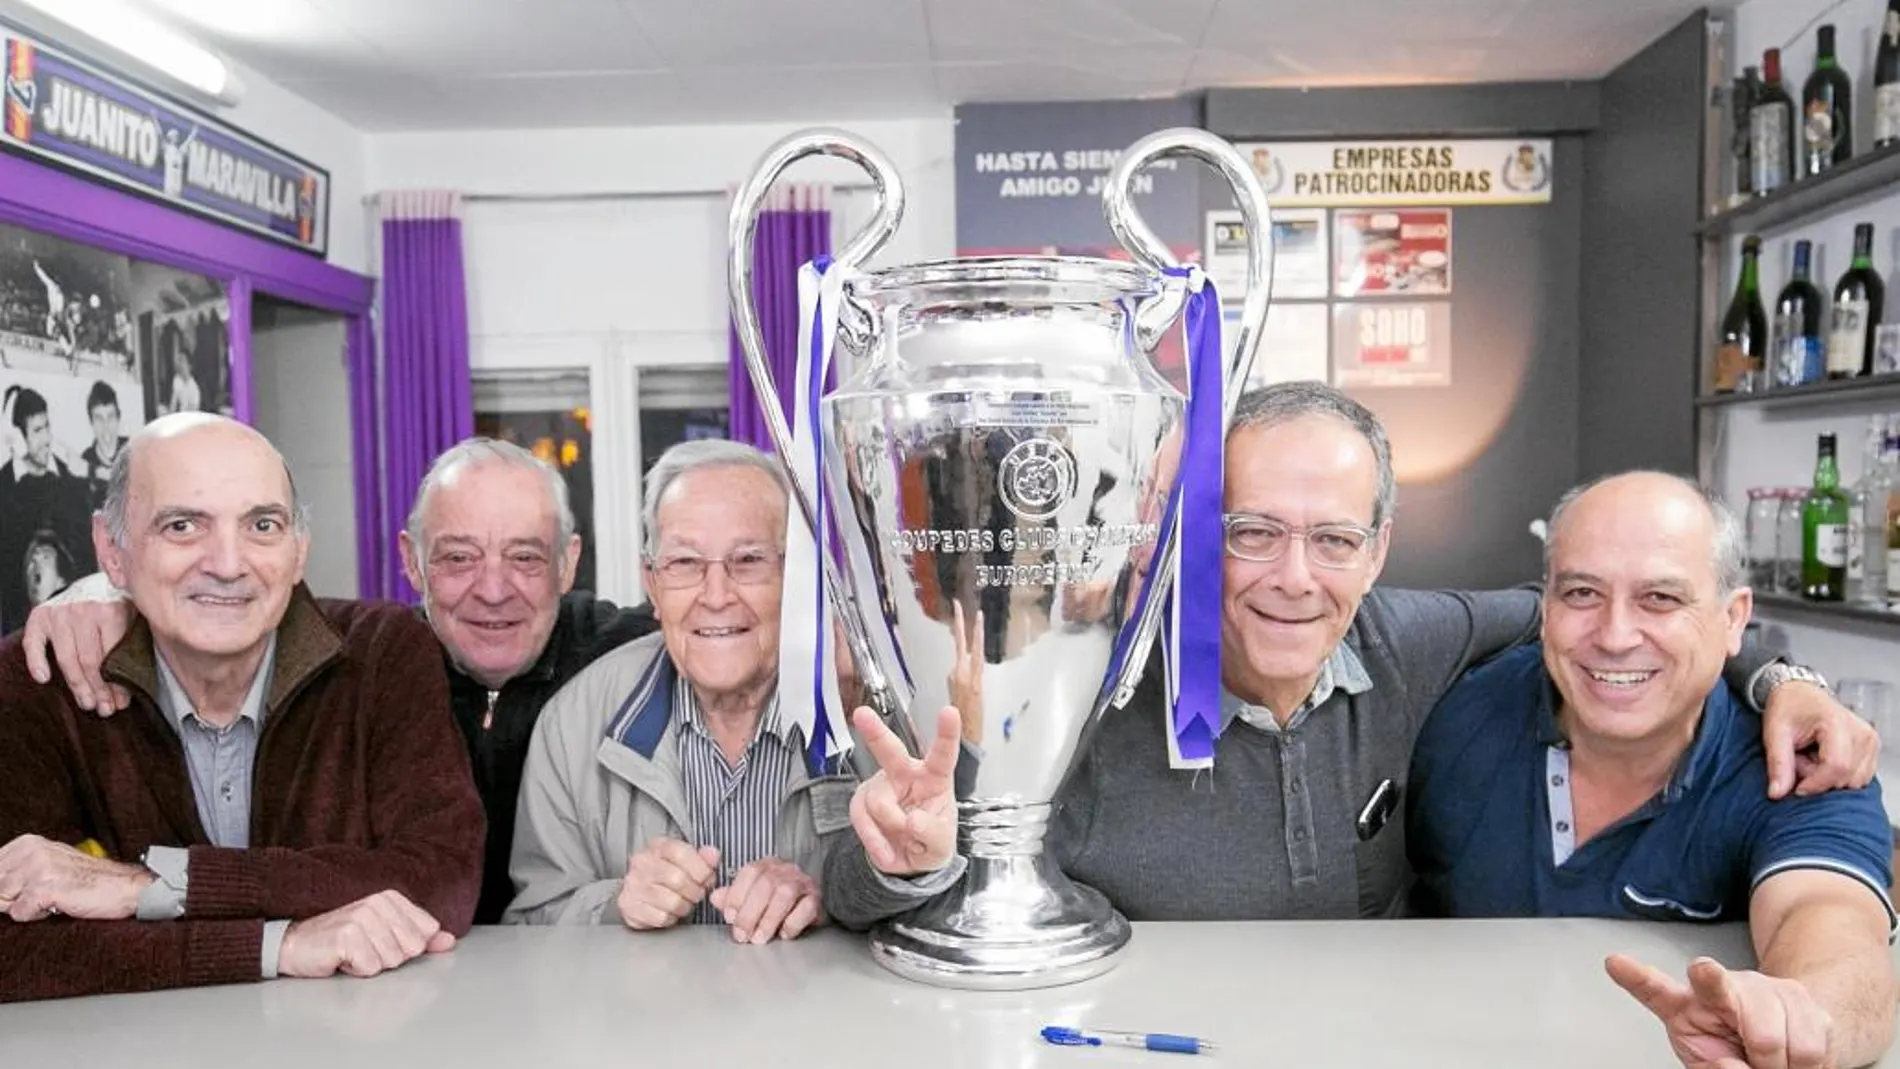 Varios miembros de la Peña Juanito, de Barcelona, posan con una réplica de la Champions